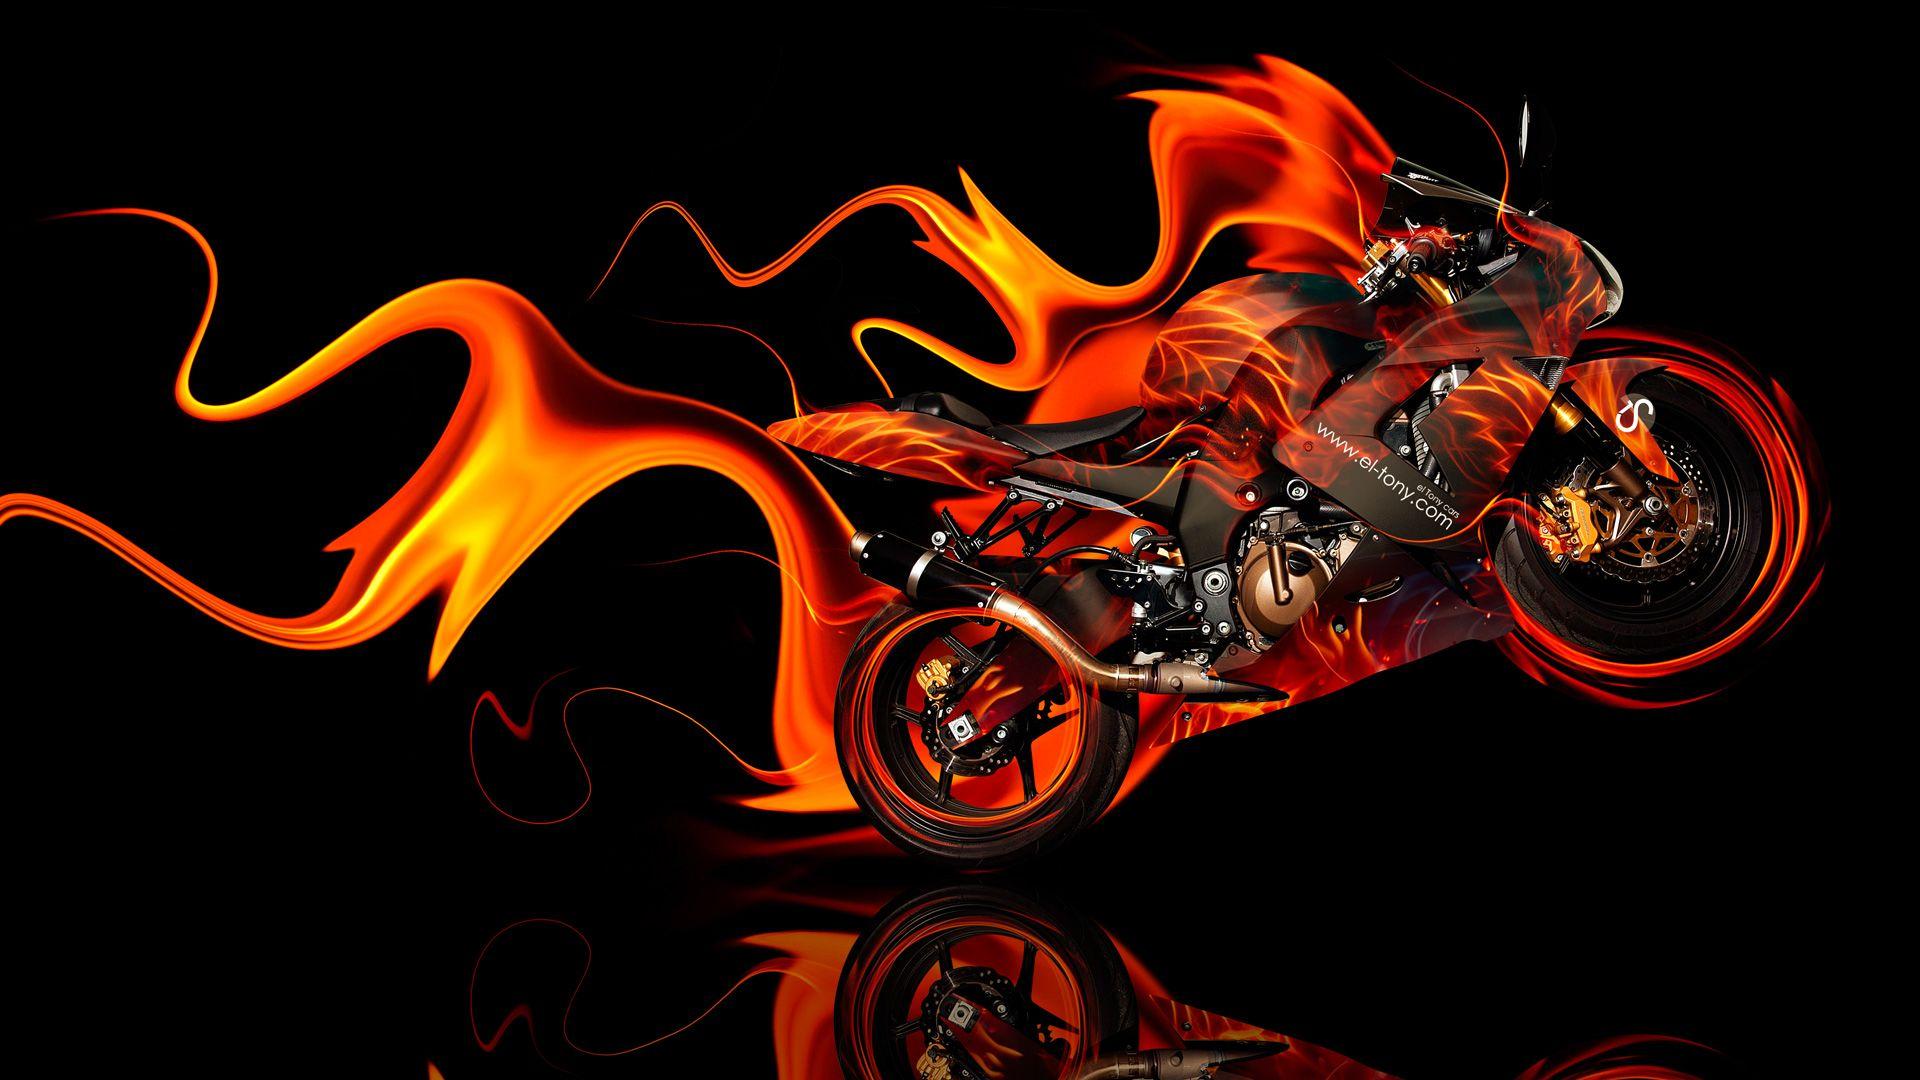 Kawasaki Side Super Fire Abstract Bike 2014